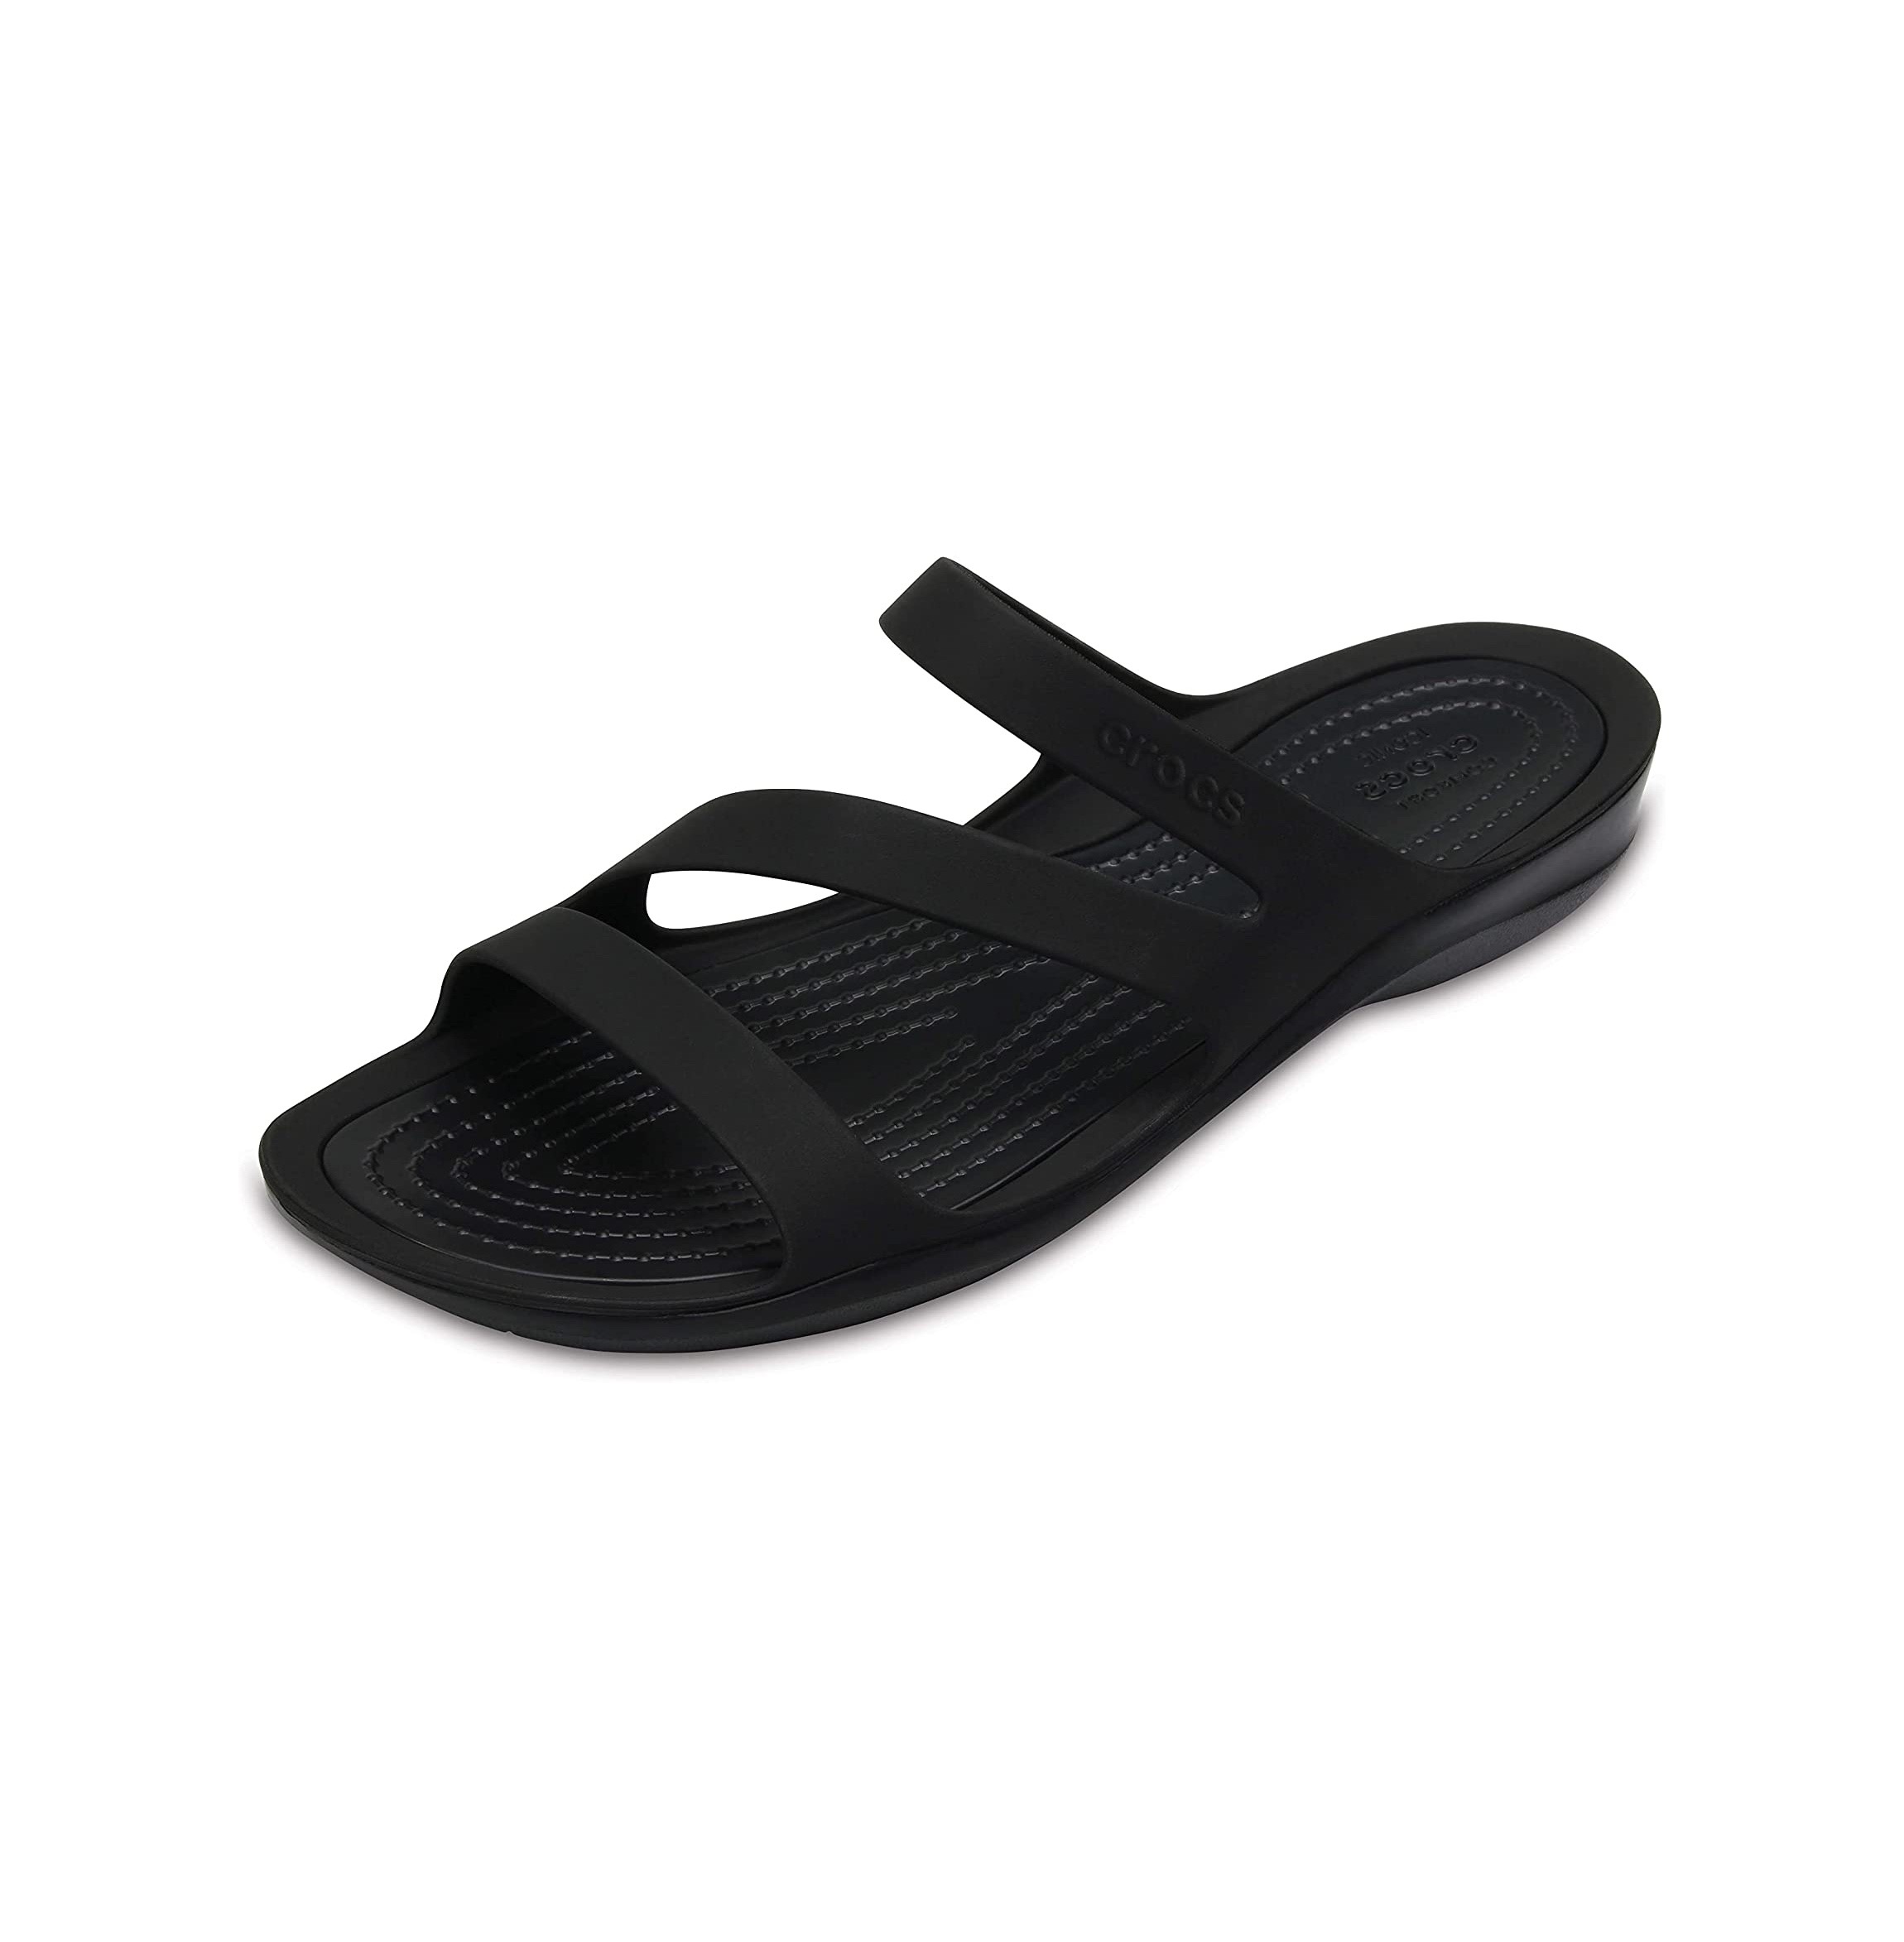 Crocs Women's Swiftwater Sandal